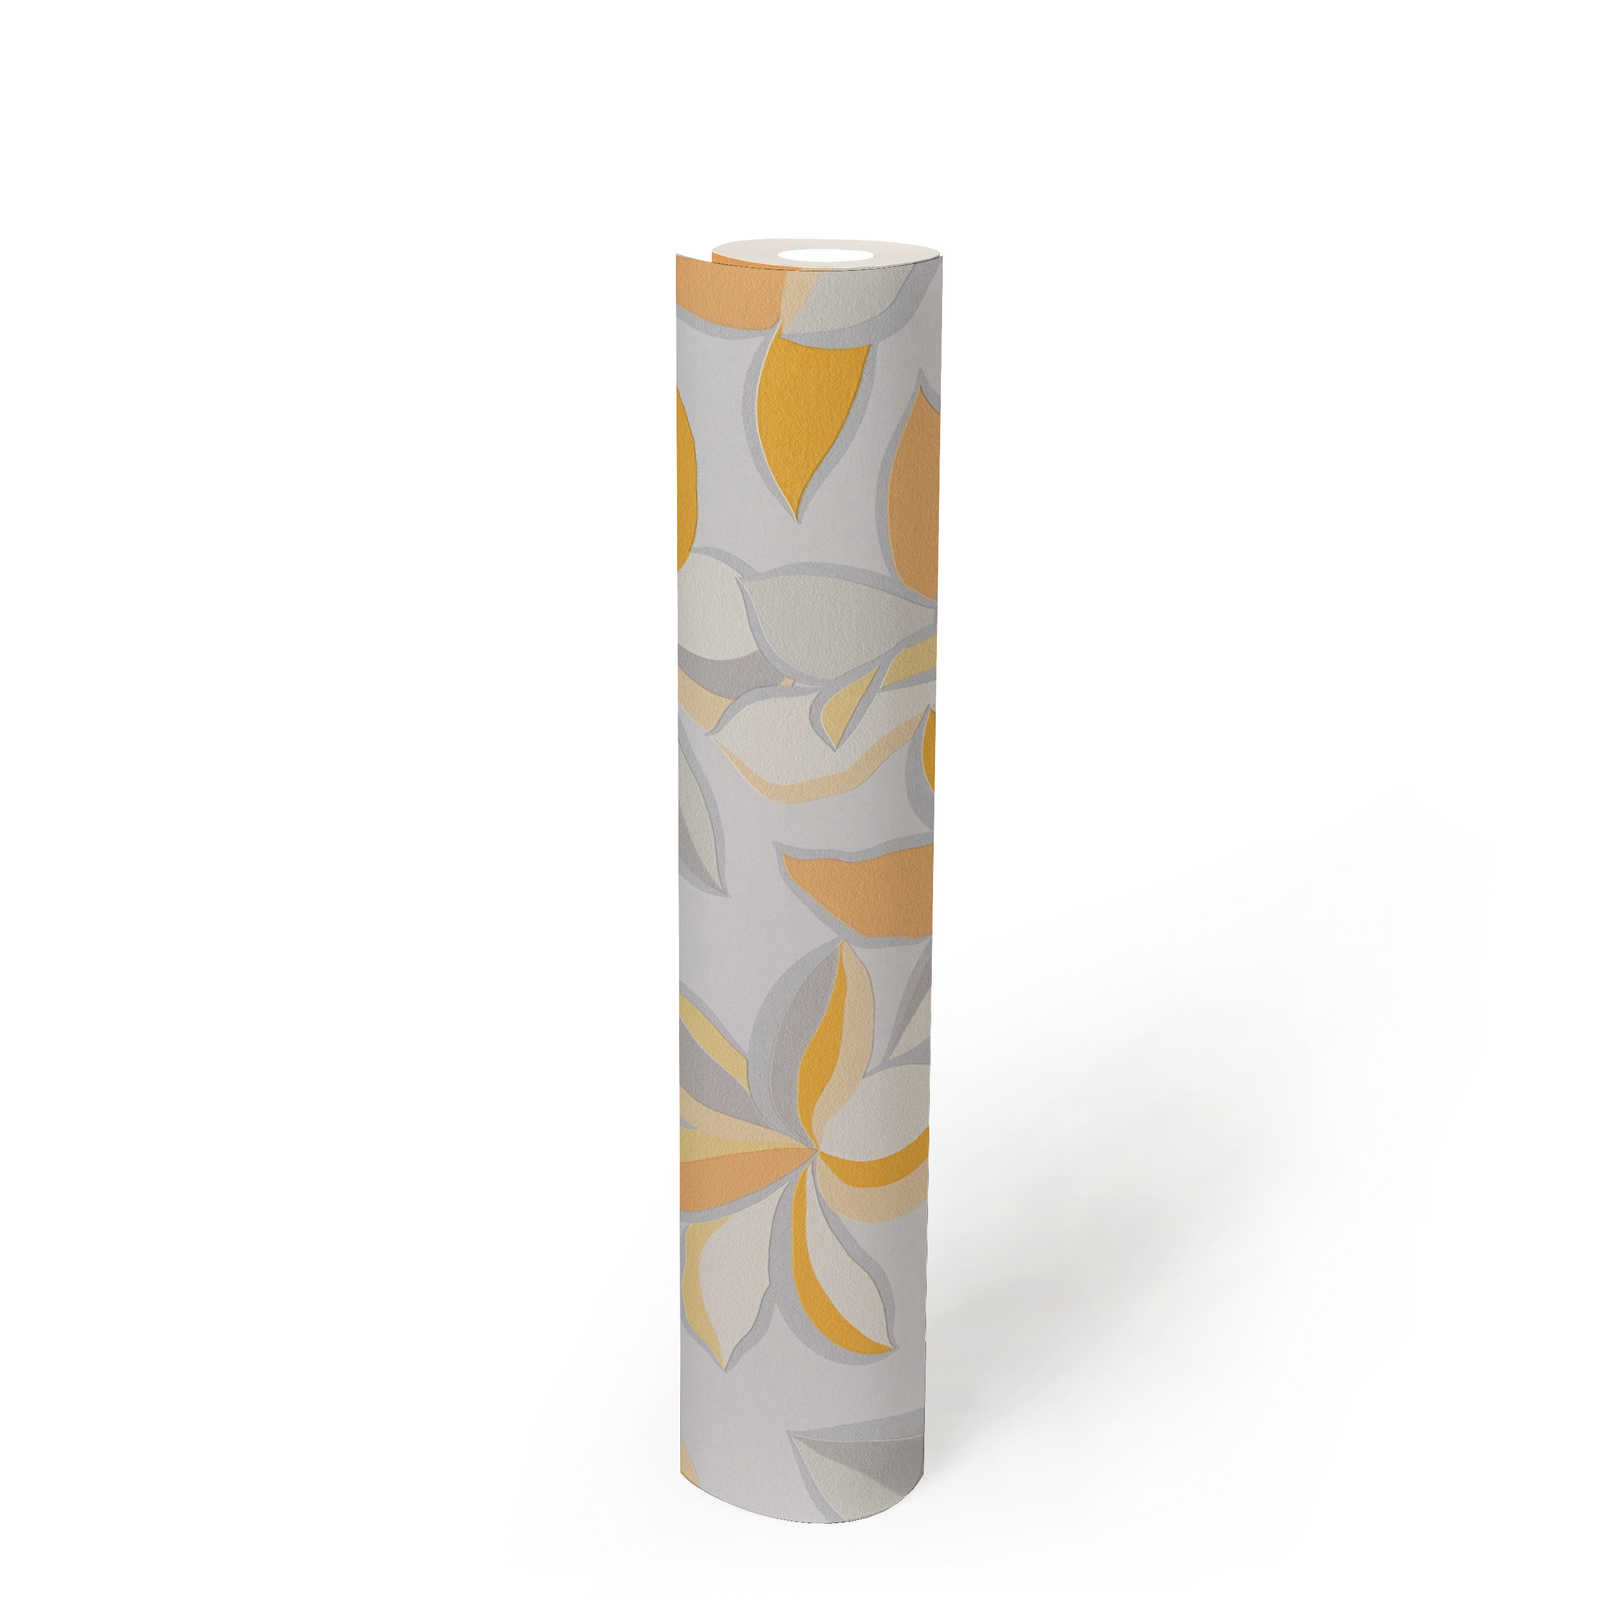             Papier peint intissé avec motif floral & aspect métallique - jaune, orange, gris
        